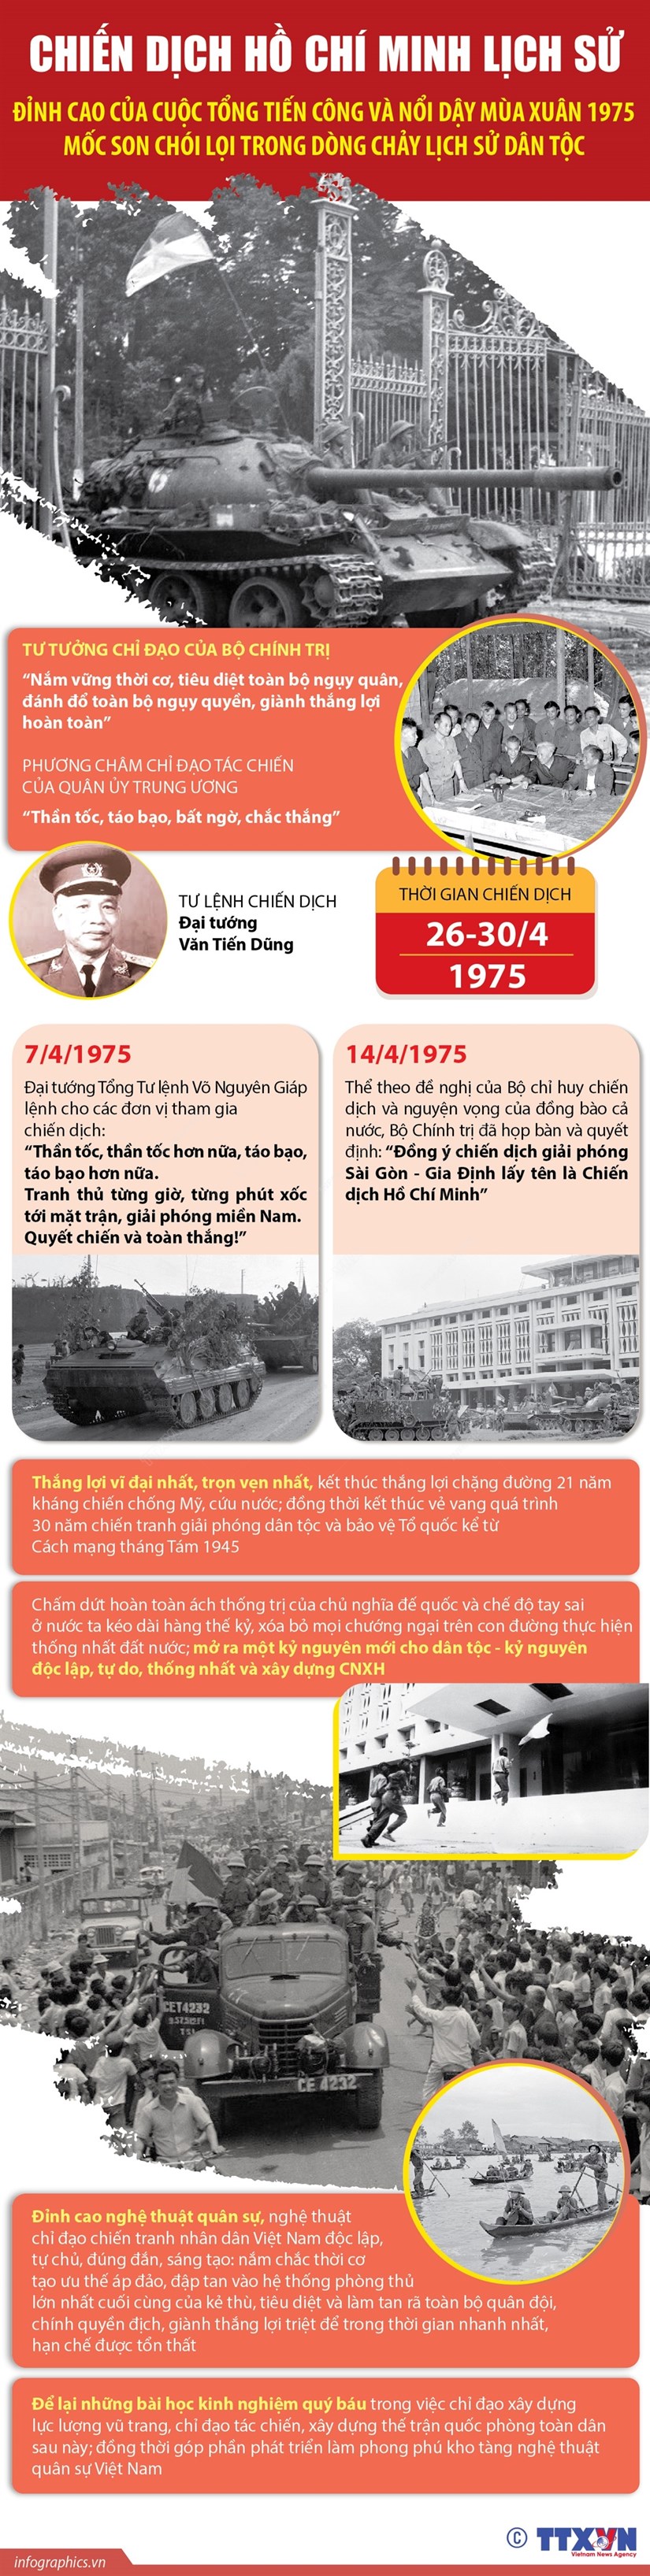 Chiến dịch Hồ Chí Minh-mốc son chói lọi trong dòng chảy lịch sử